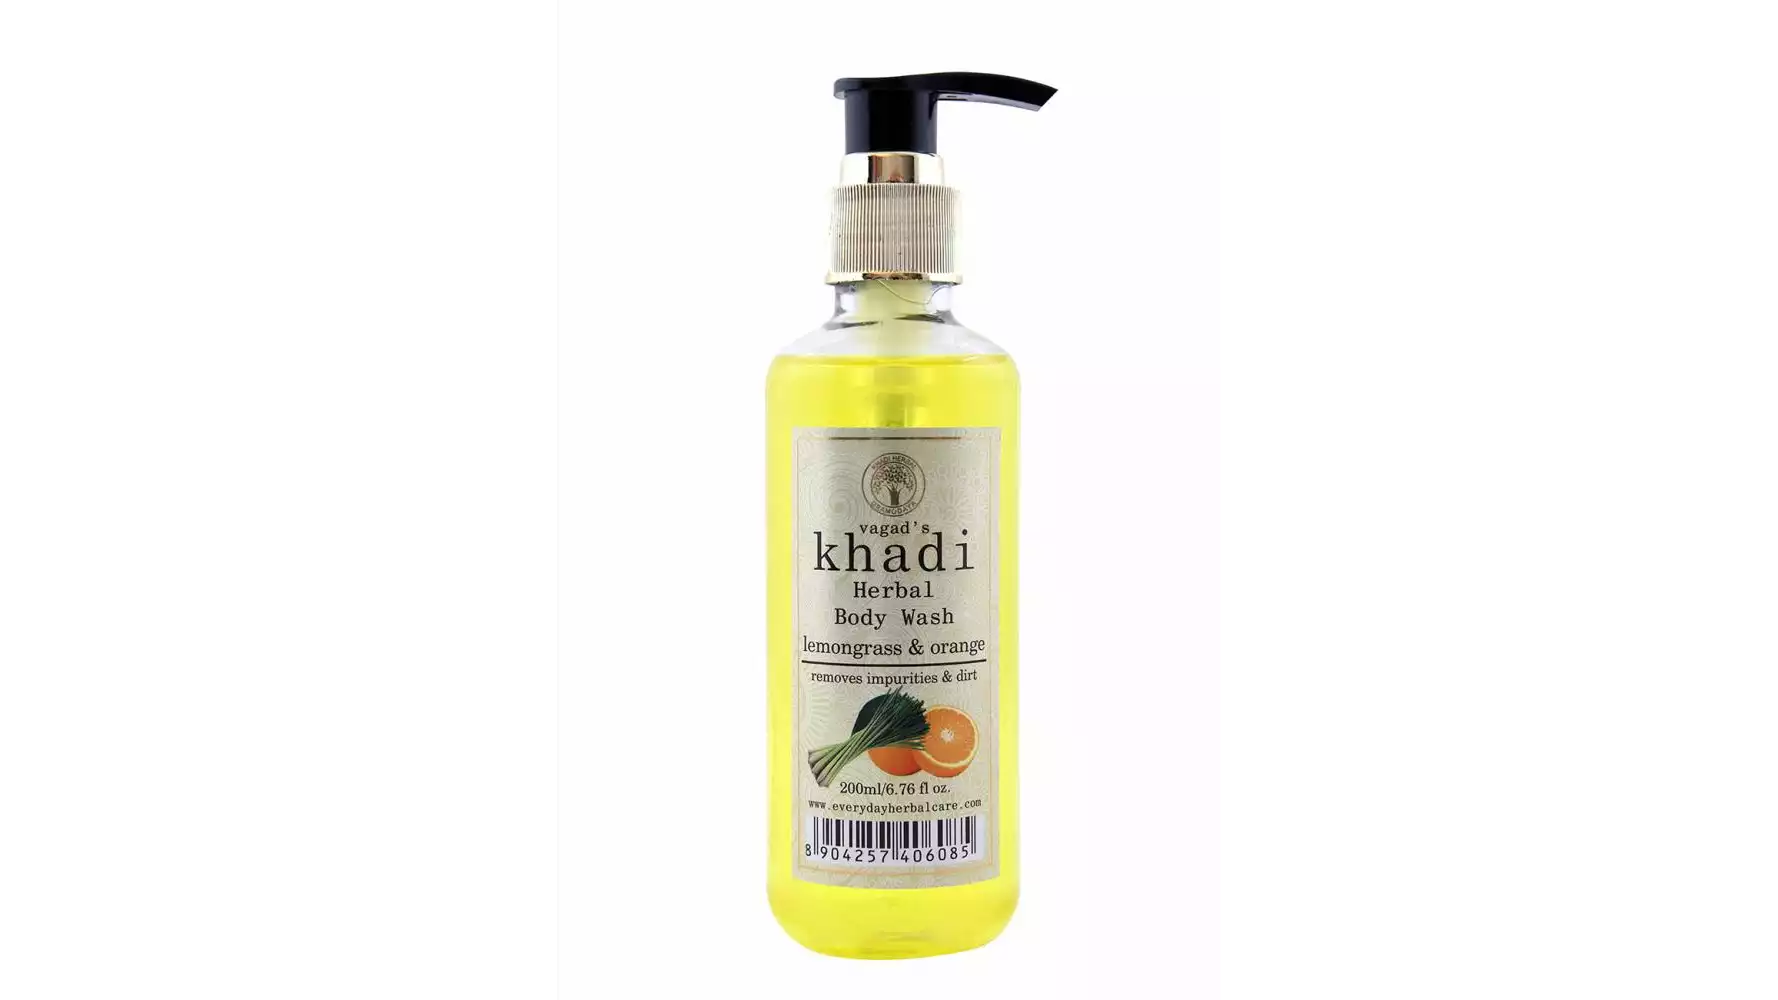 Vagads Khadi Lemongrass & Orange Body Wash (200ml)